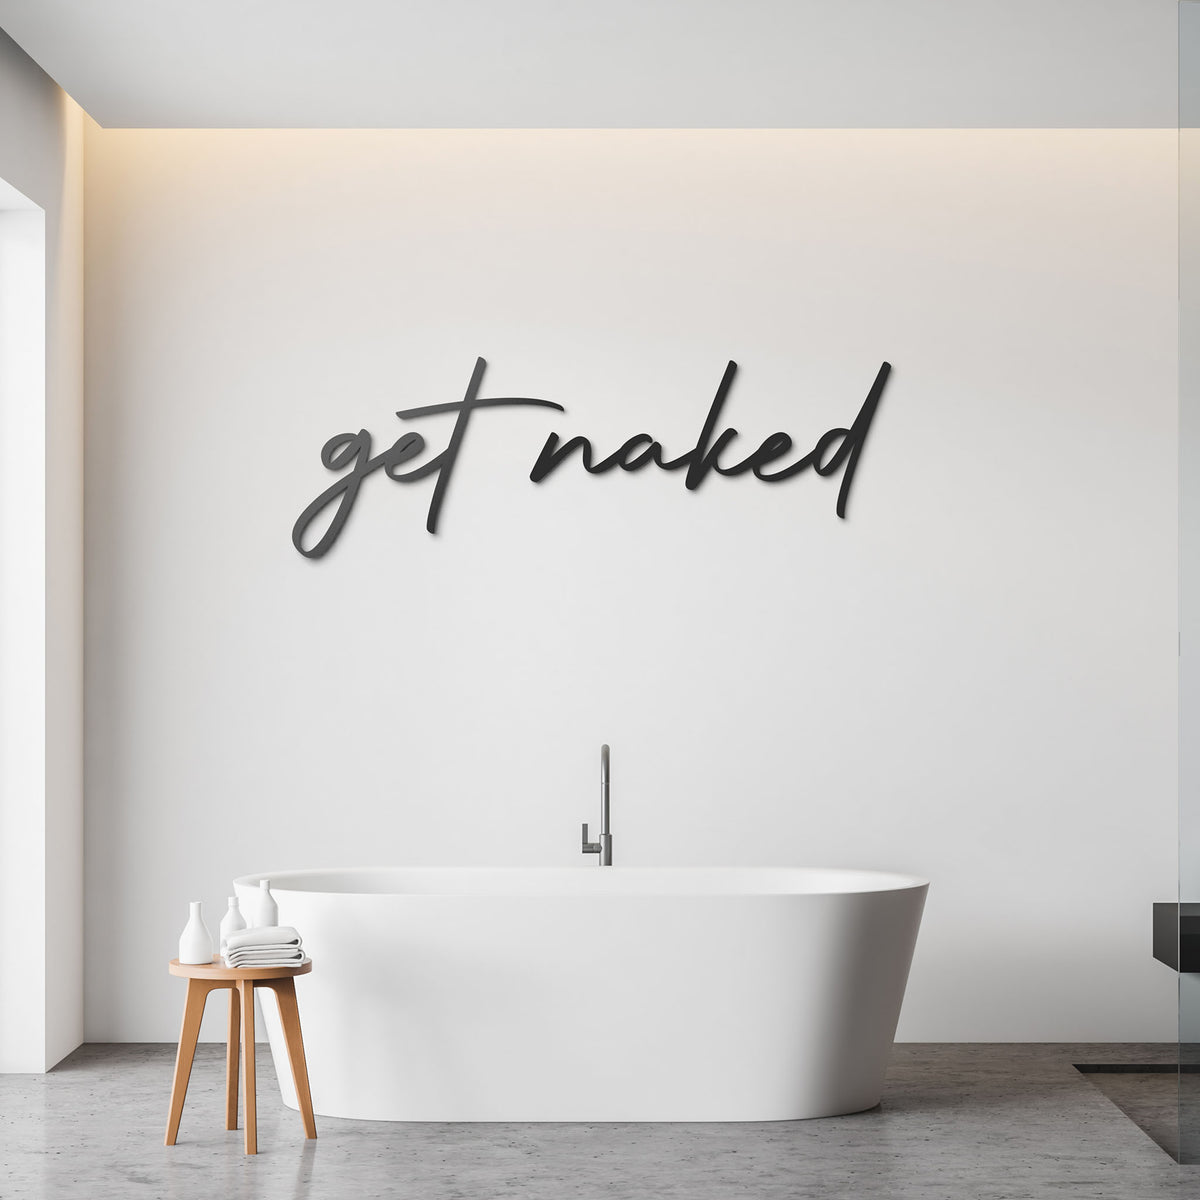 wanddeko metall schwarz meschrift get naked badezimmer dekoration